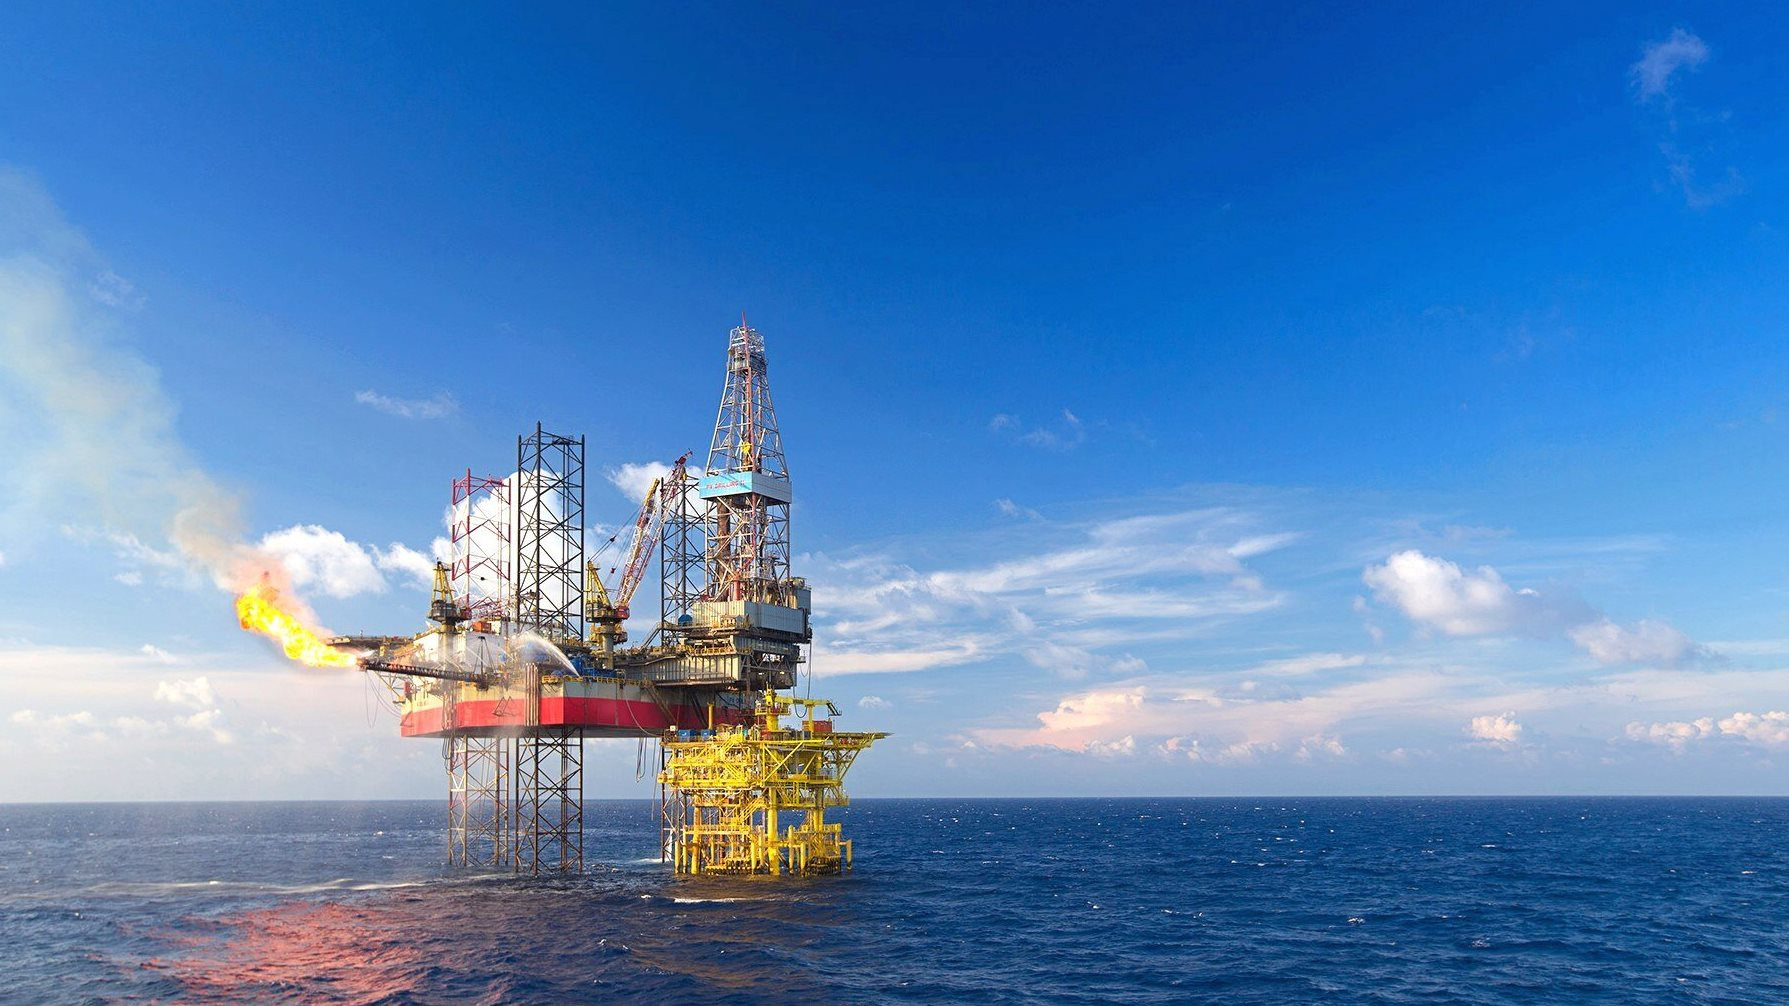 "Đại gia" dầu khí được dự báo trúng gói thầu 100 triệu USD tại mỏ Lạc Đà Vàng, cổ phiếu tăng bốc lên sát đỉnh lịch sử